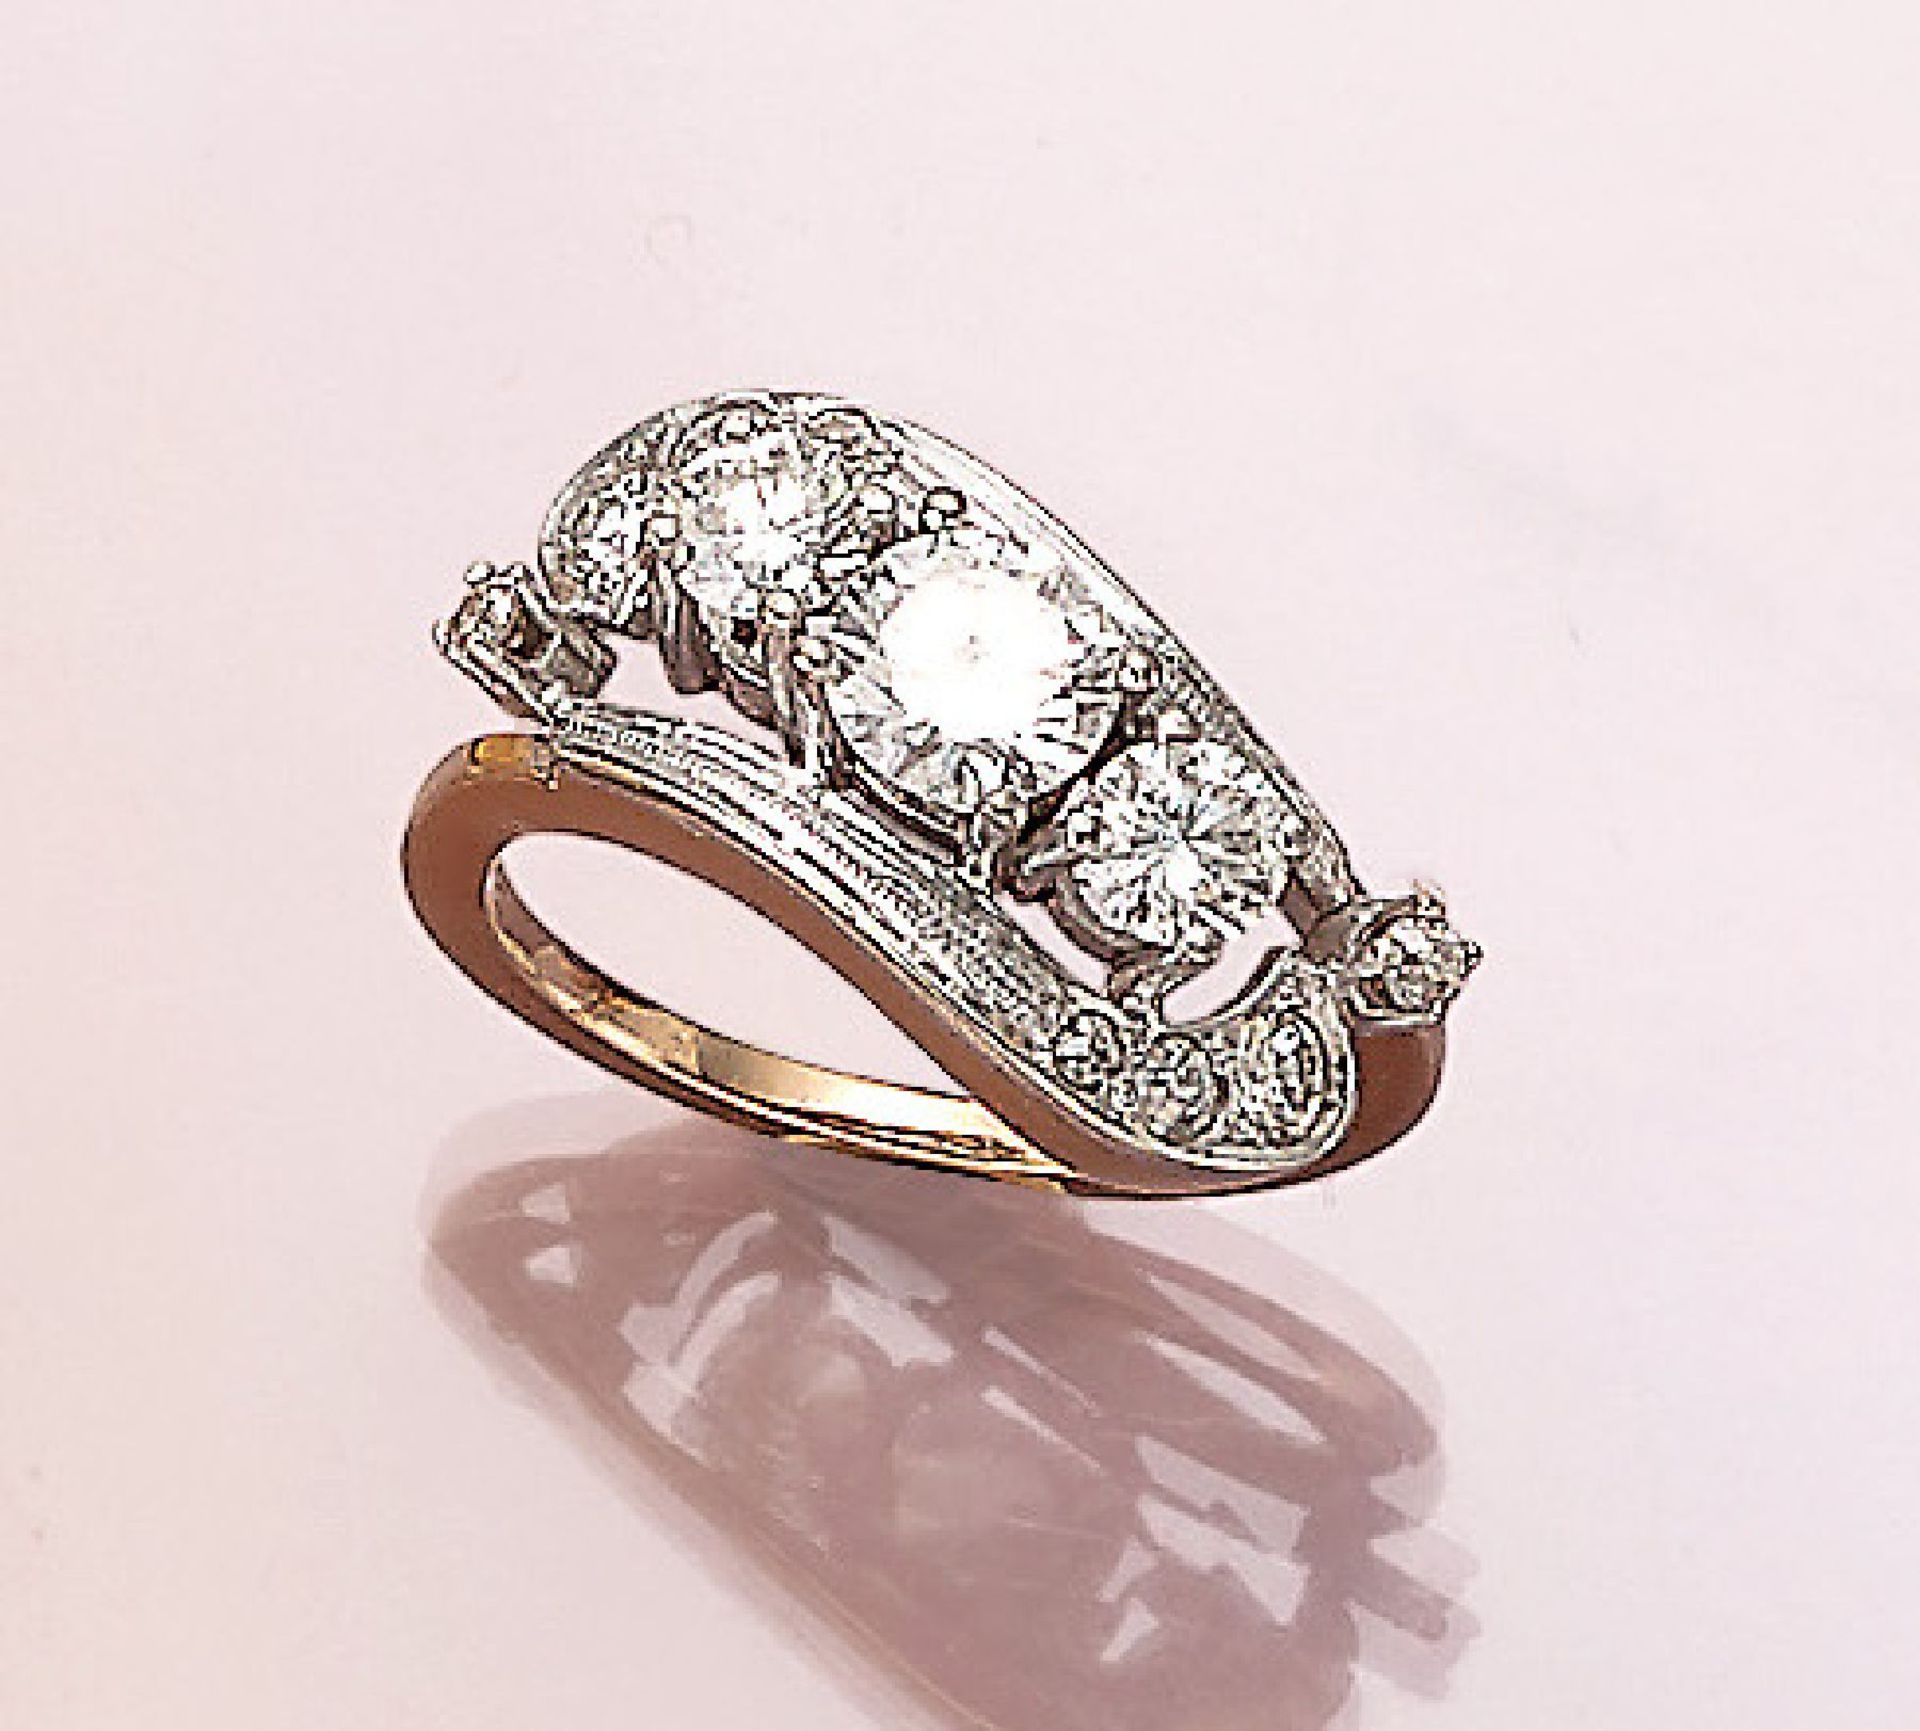 14 kt Gold Ring mit Diamanten, WG/GG 585/000, 3 Brillanten zus. ca. 1.80 ct Weiß- l.get.Weiß/si, 8